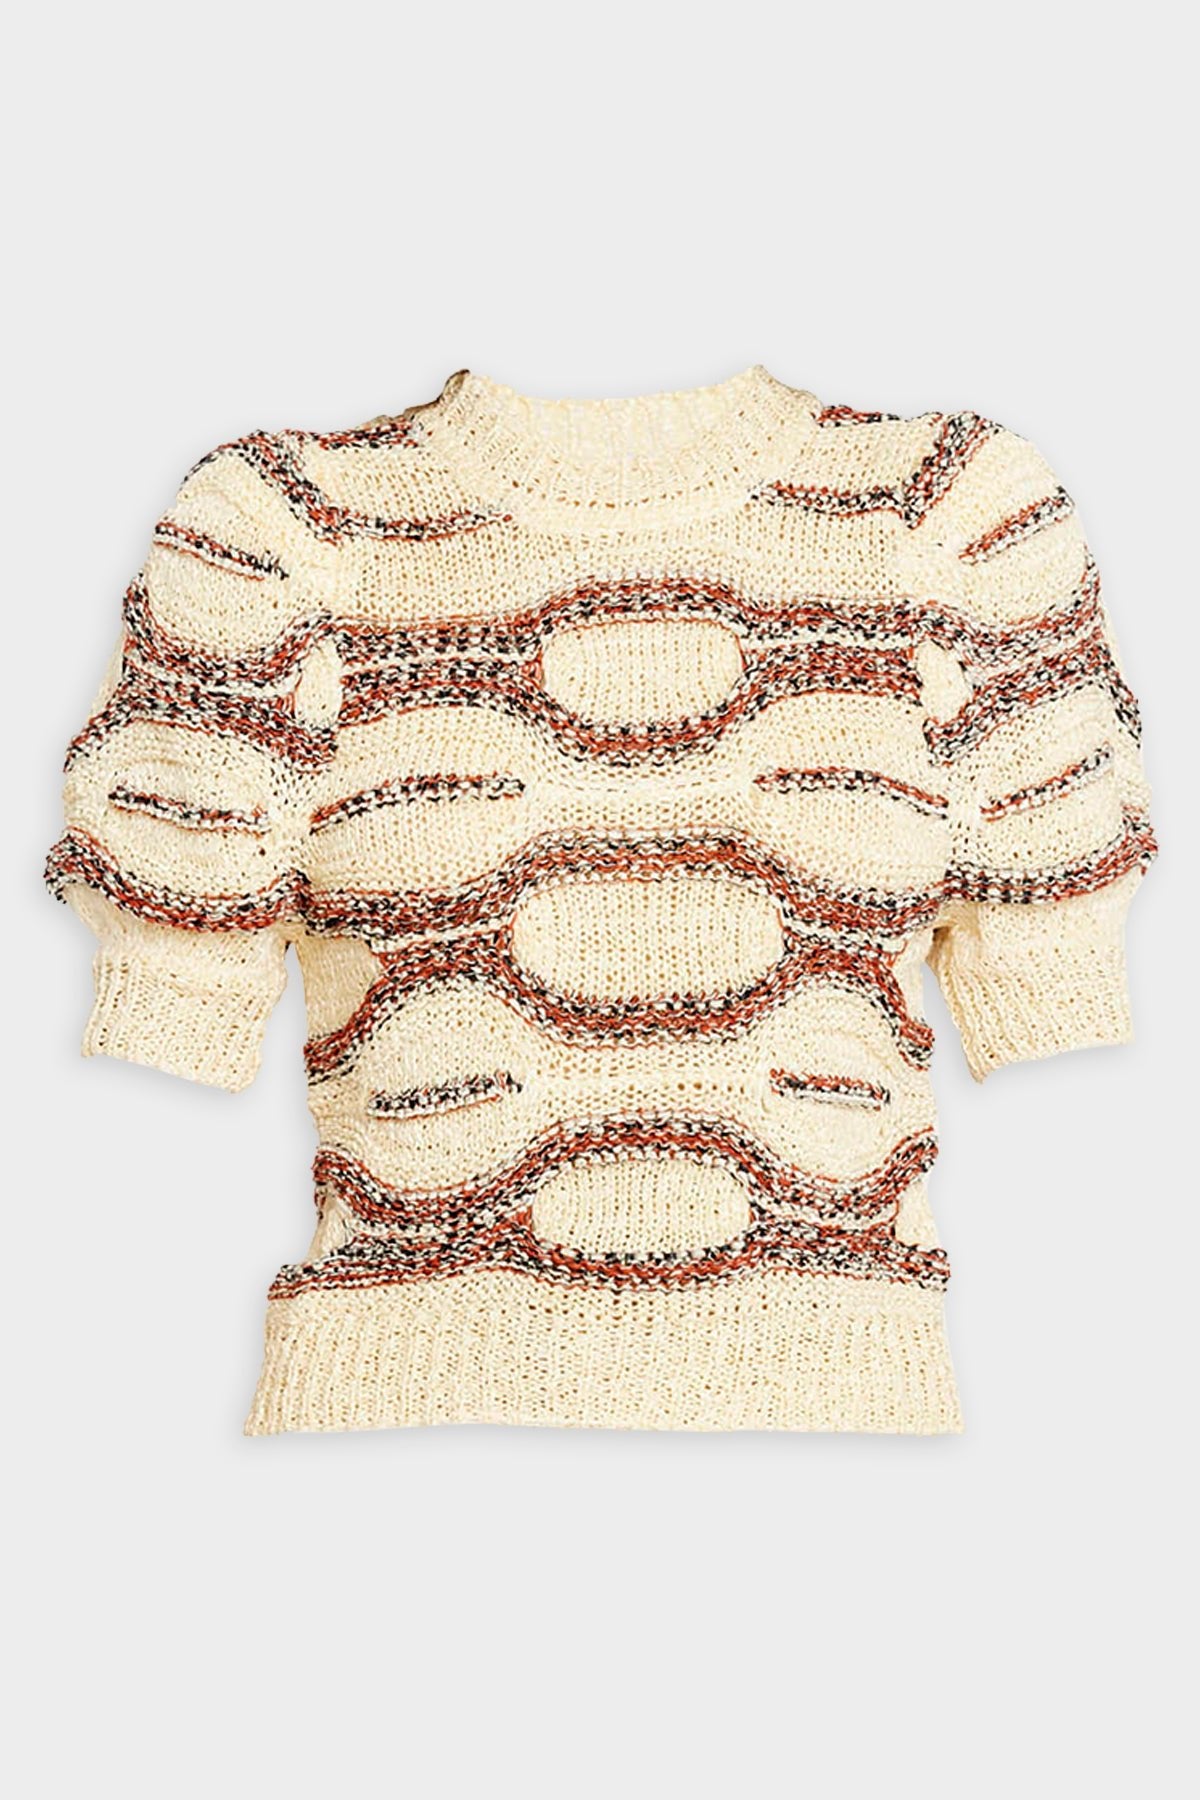 Alba Crochet Top in Sedona - shop-olivia.com